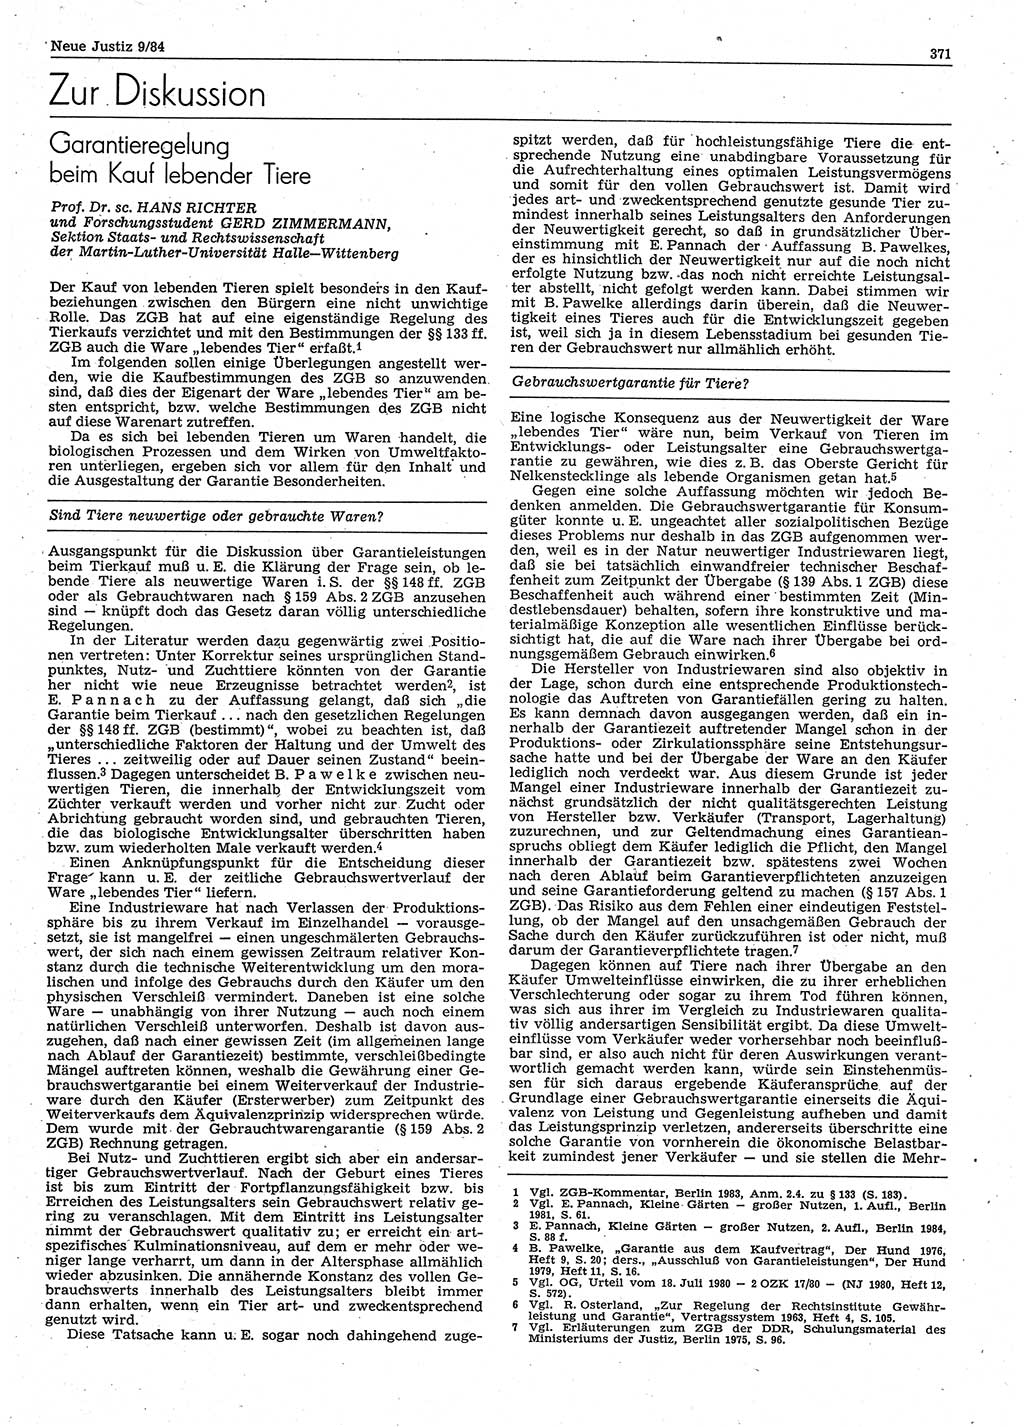 Neue Justiz (NJ), Zeitschrift für sozialistisches Recht und Gesetzlichkeit [Deutsche Demokratische Republik (DDR)], 38. Jahrgang 1984, Seite 371 (NJ DDR 1984, S. 371)